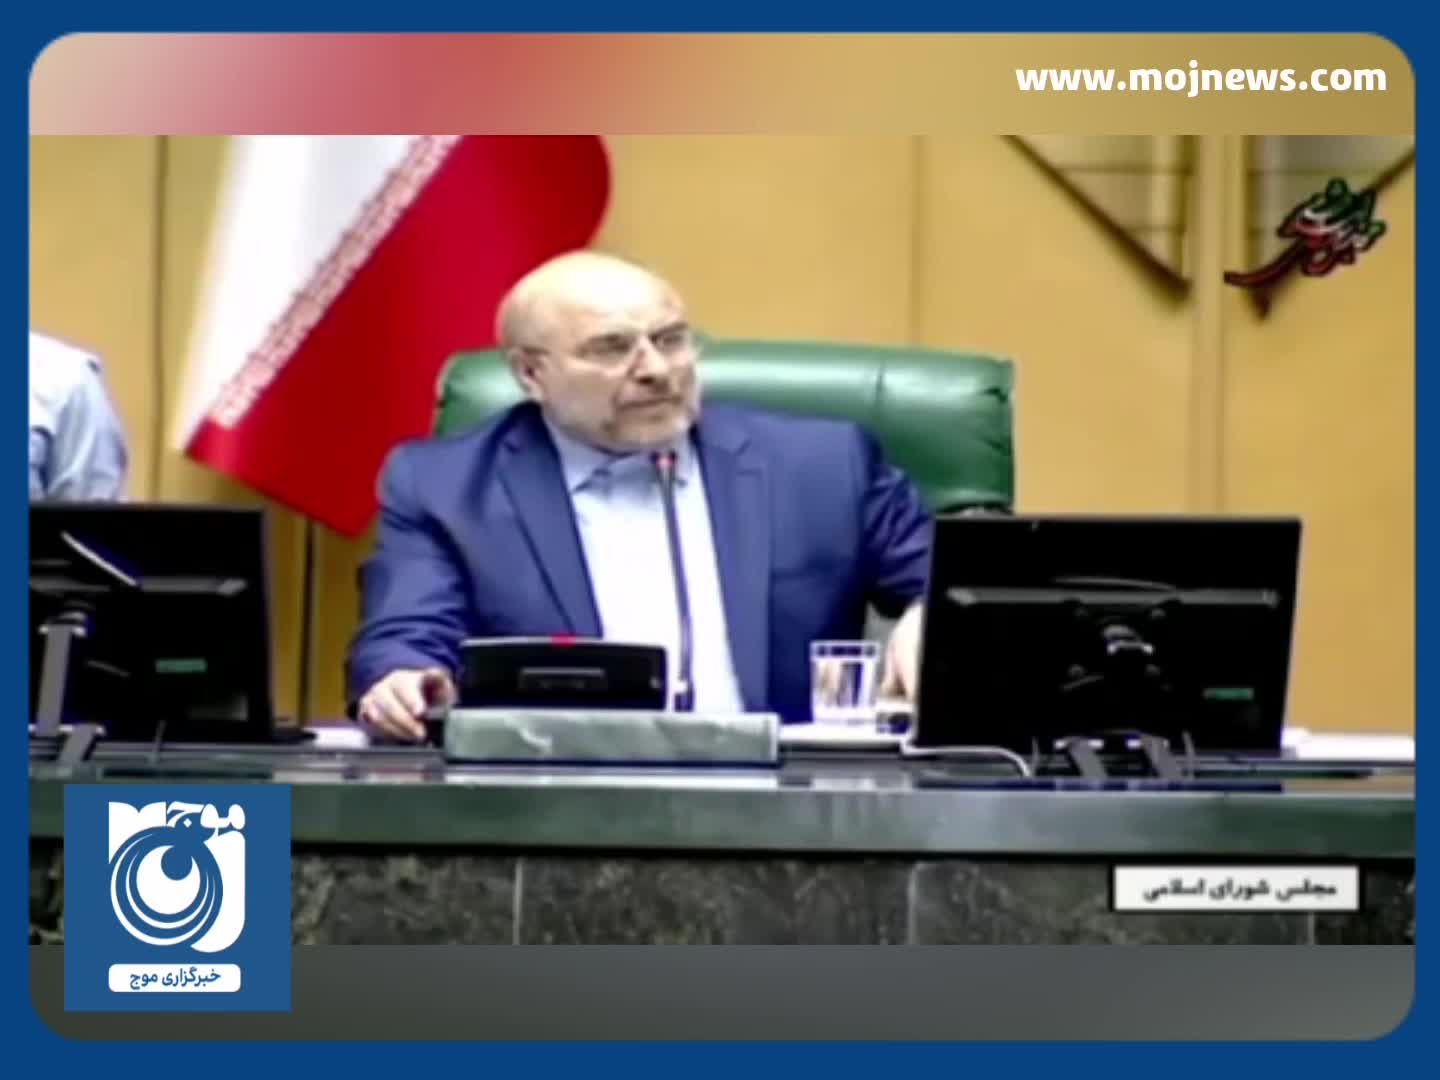 توضیح قالیباف دربارهه مخالفت مجلس با استعفای الیاس نادران از سمت نمایندگی + فیلم